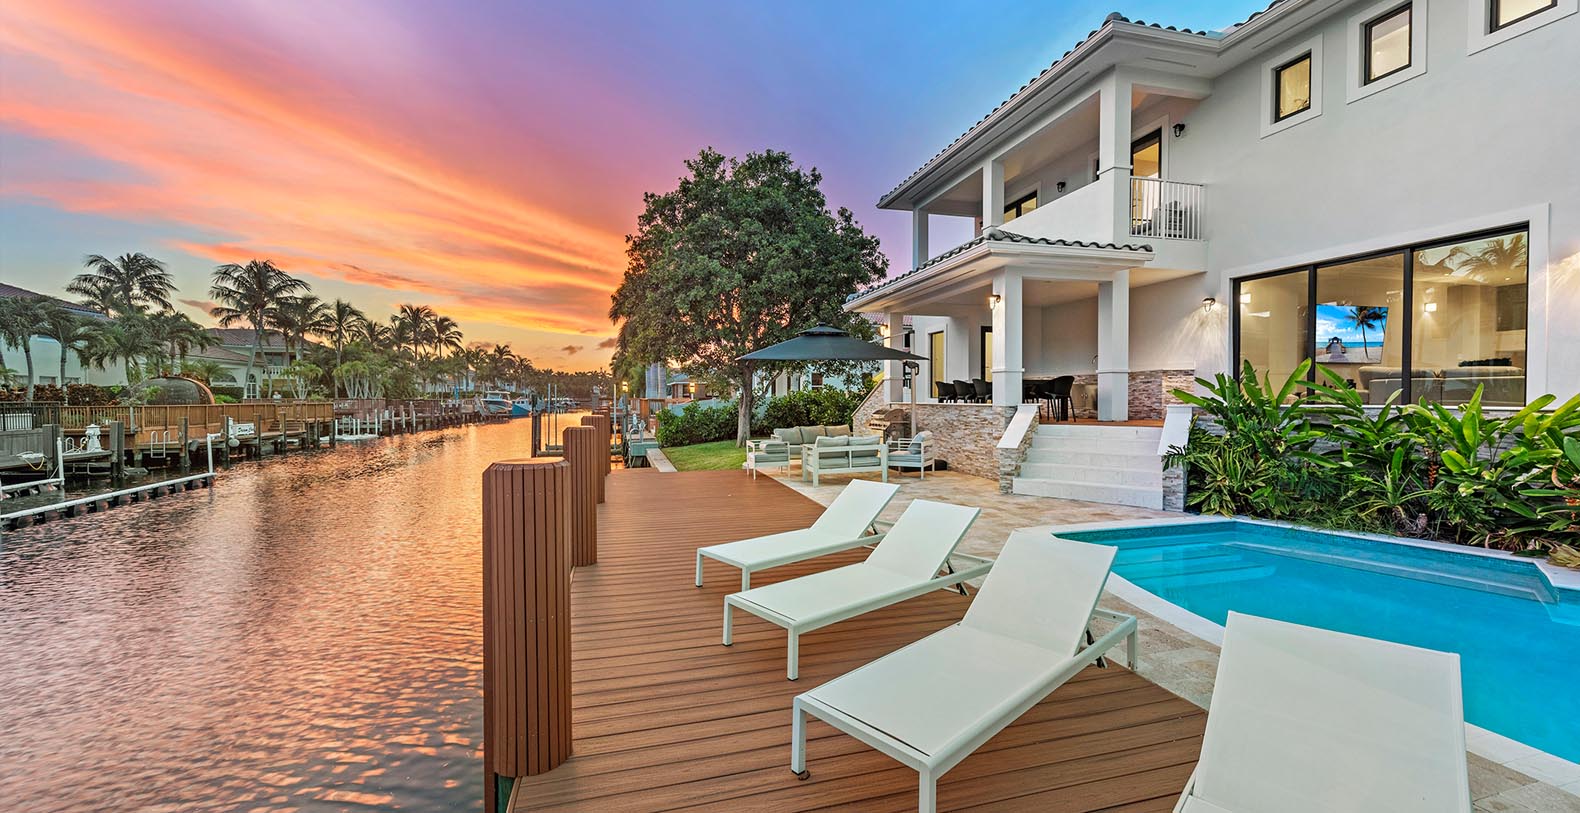 Sol y Costa Luxury Villa Holiday Rental